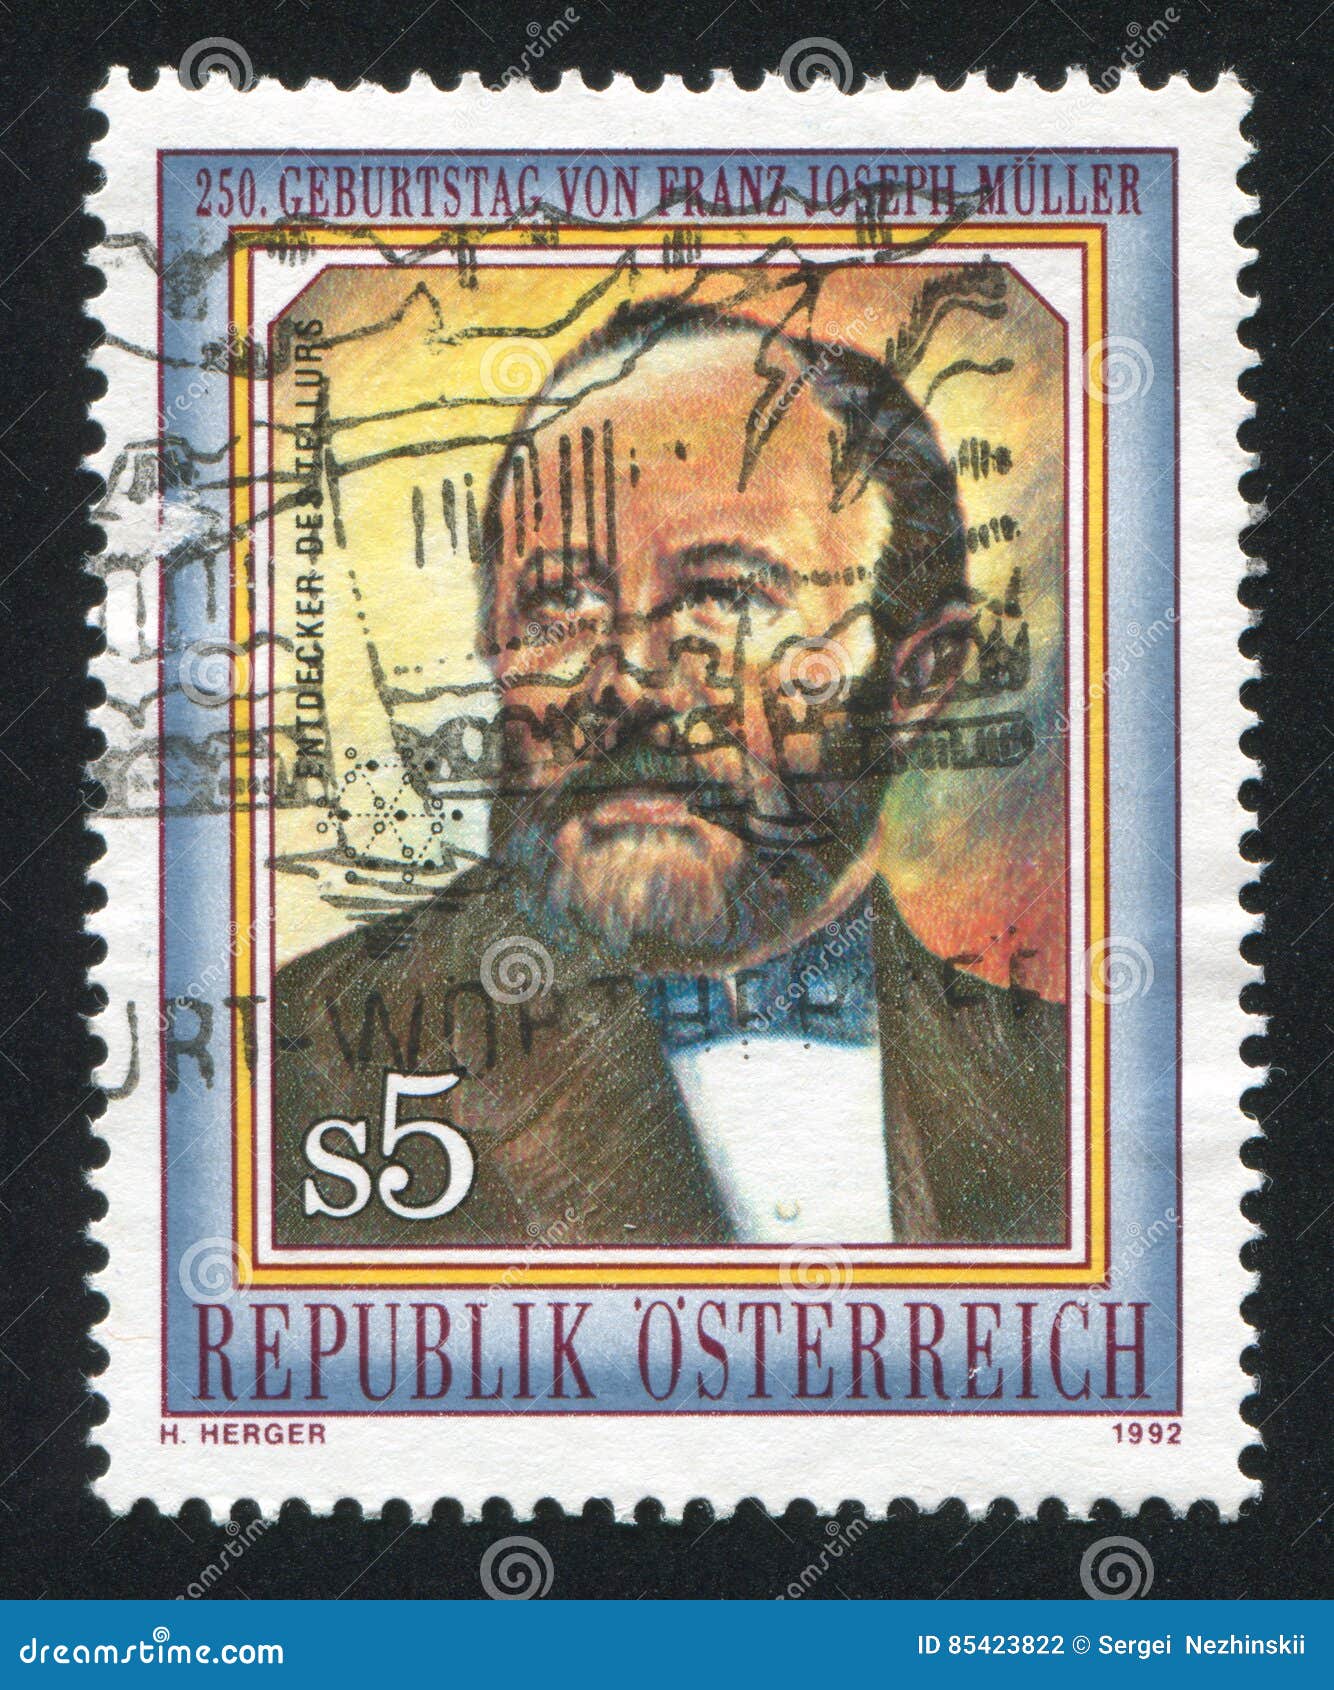 Franz Joseph Muller von Reichenstein